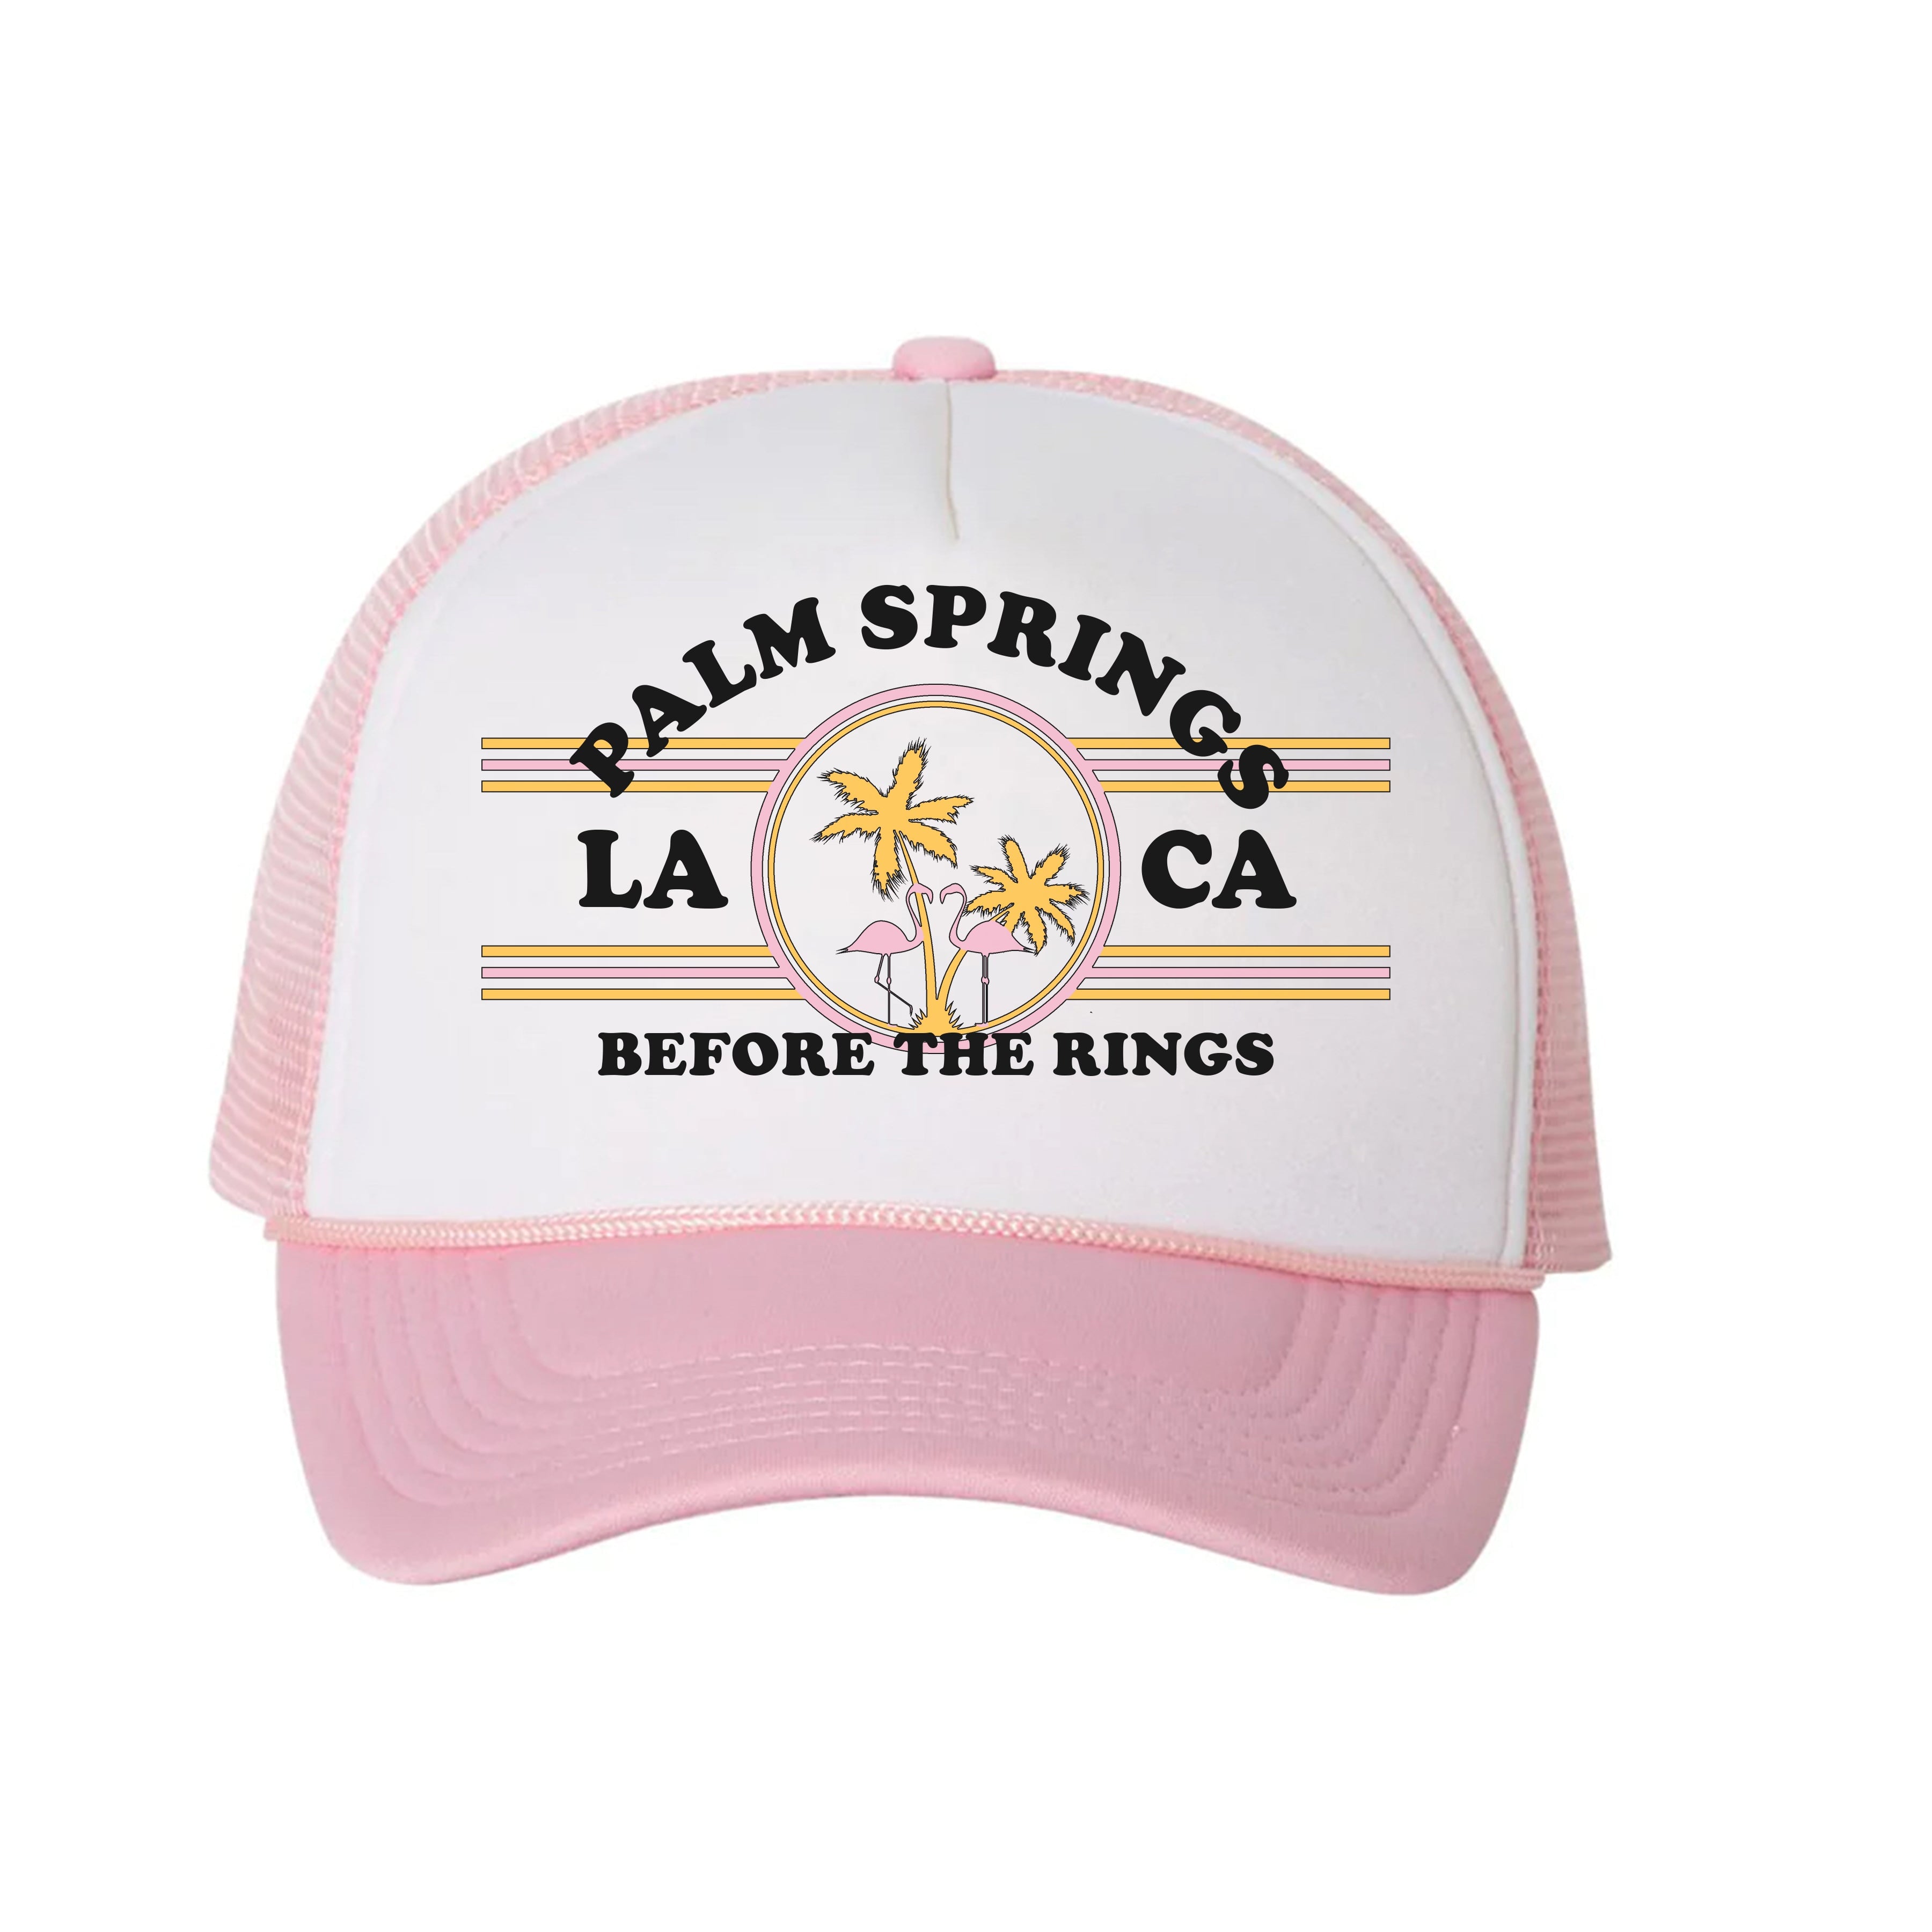 Palm Springs Before the Rings Trucker Hat HAT LULUSIMONSTUDIO 